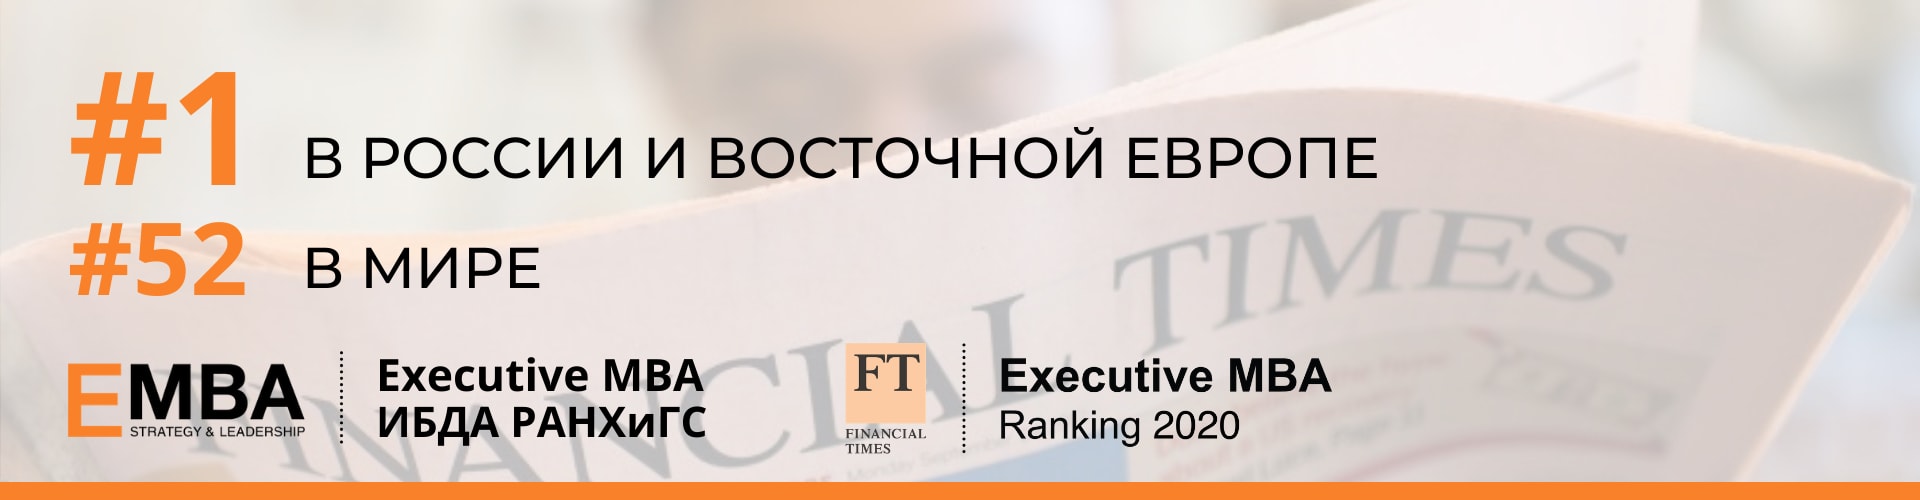 Executive MBA ИБДА РАНХиГС – №1 в России рейтинге Financial Times 2020